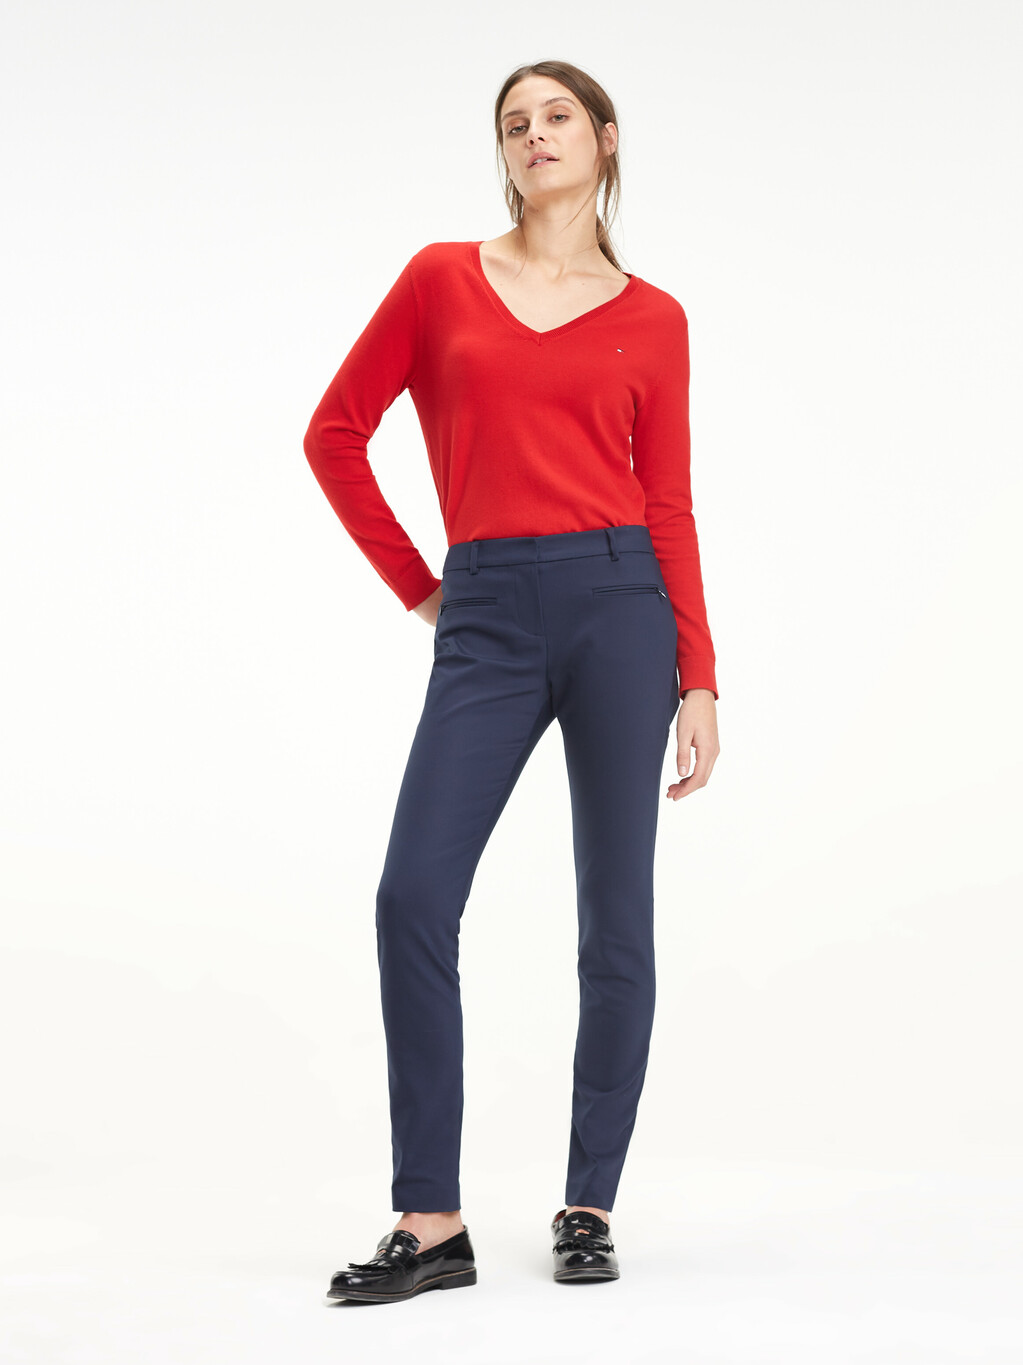 Heritage V-Neck Sweater, APPLE RED, hi-res